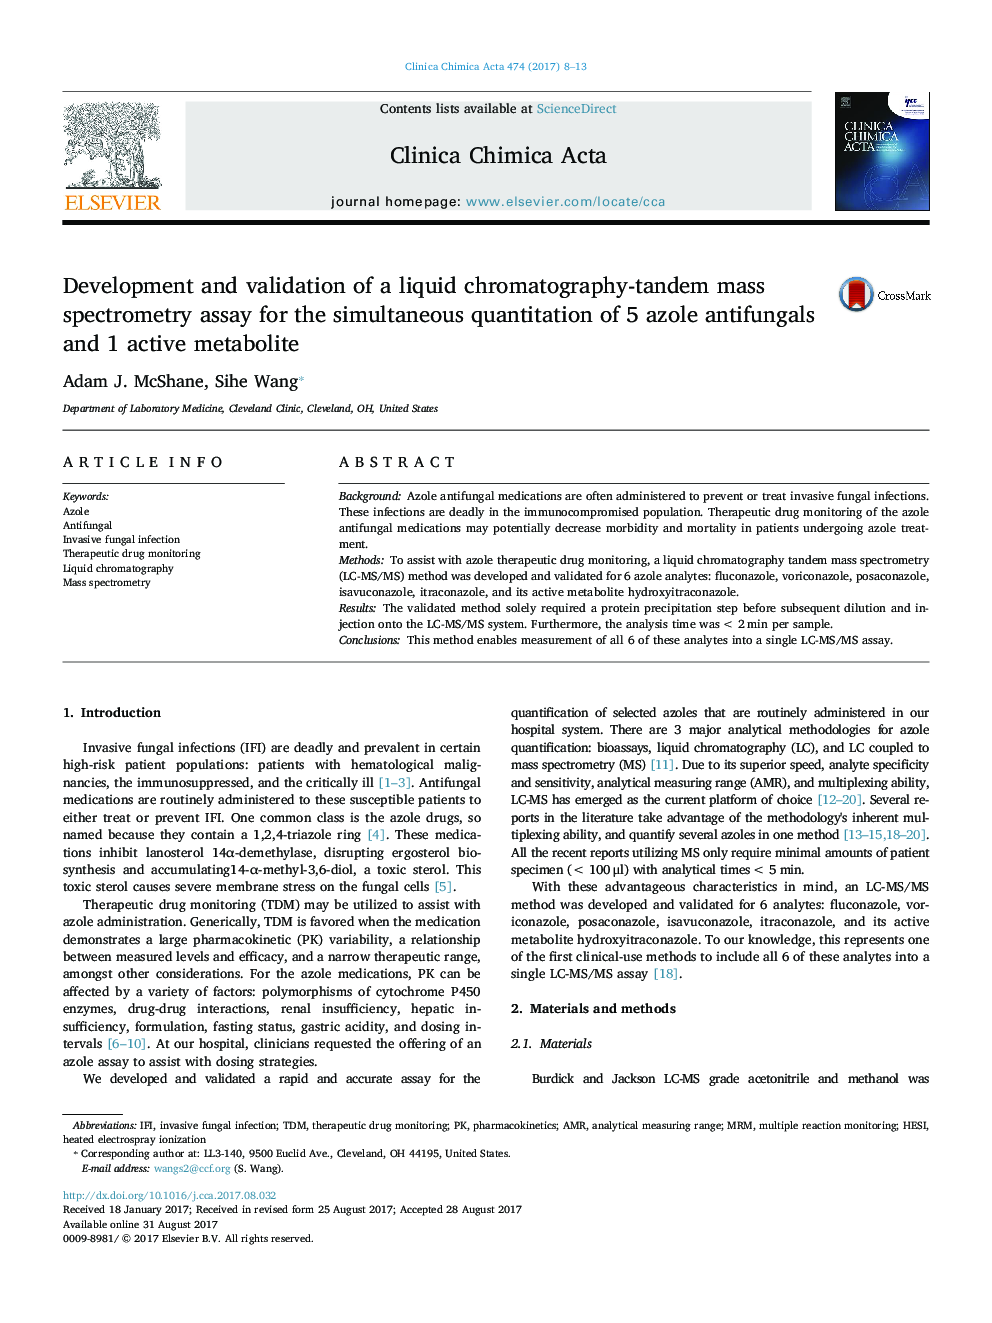 توسعه و اعتبار سنجی طیف سنجی جرمی کروماتوگرافی-دو بعدی برای اندازه گیری همزمان 5 نوع ضد قارچی آزول و 1 متابولیت فعال 